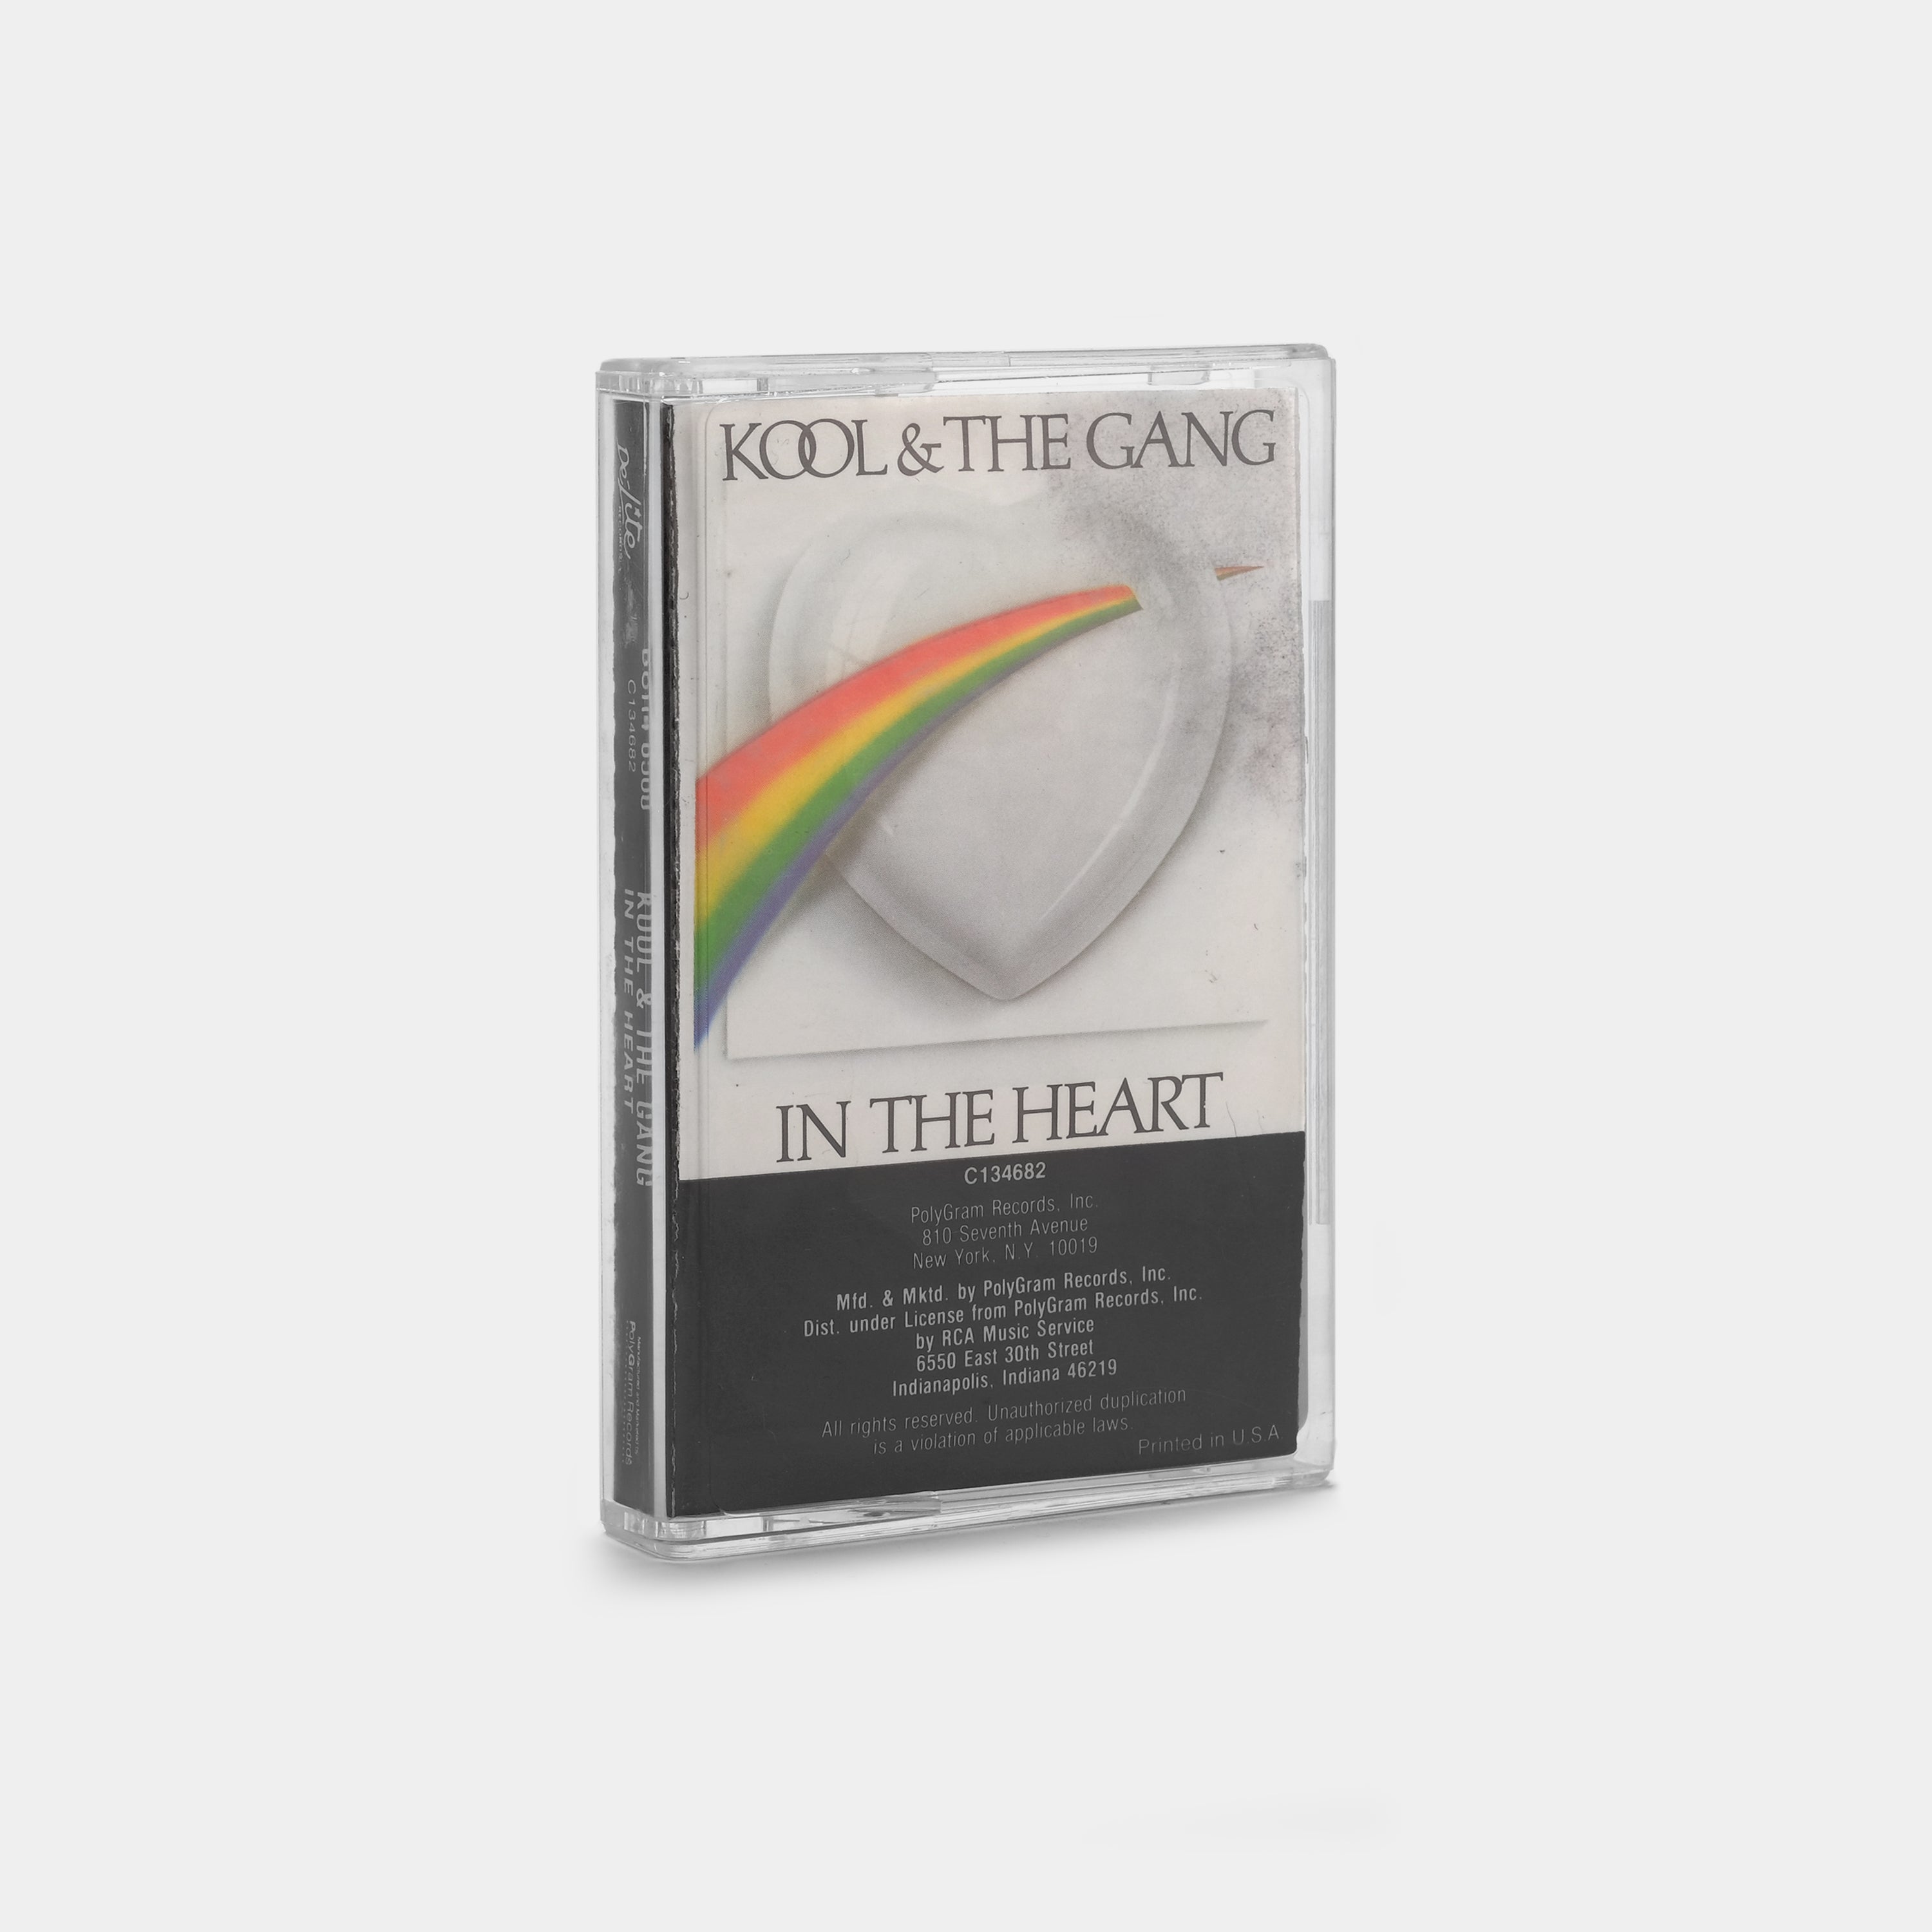 Kool & The Gang - In The Heart Cassette Tape